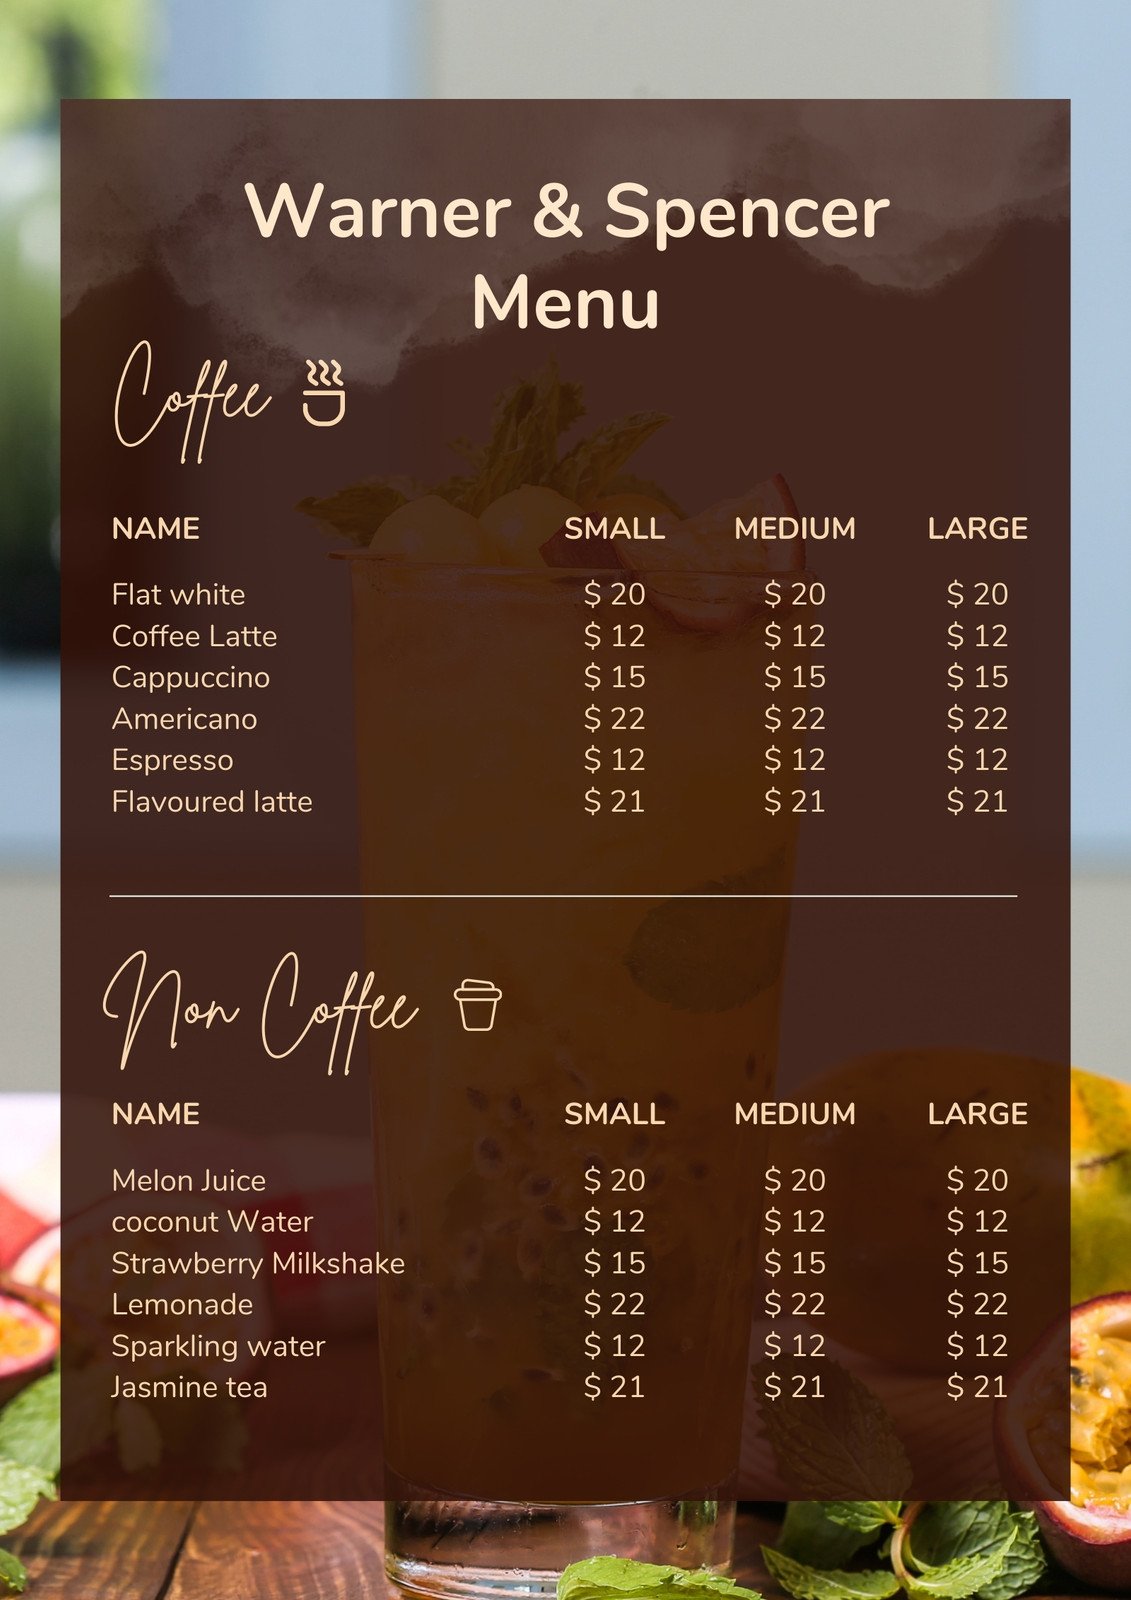 Một mẫu thiết kế nền menu độc đáo và tinh tế có thể giúp cho quán của bạn thu hút được sự chú ý của khách hàng. Hãy tham khảo những hình ảnh liên quan để tạo ra một bảng menu đẹp với các mẫu nền tuyệt vời. 